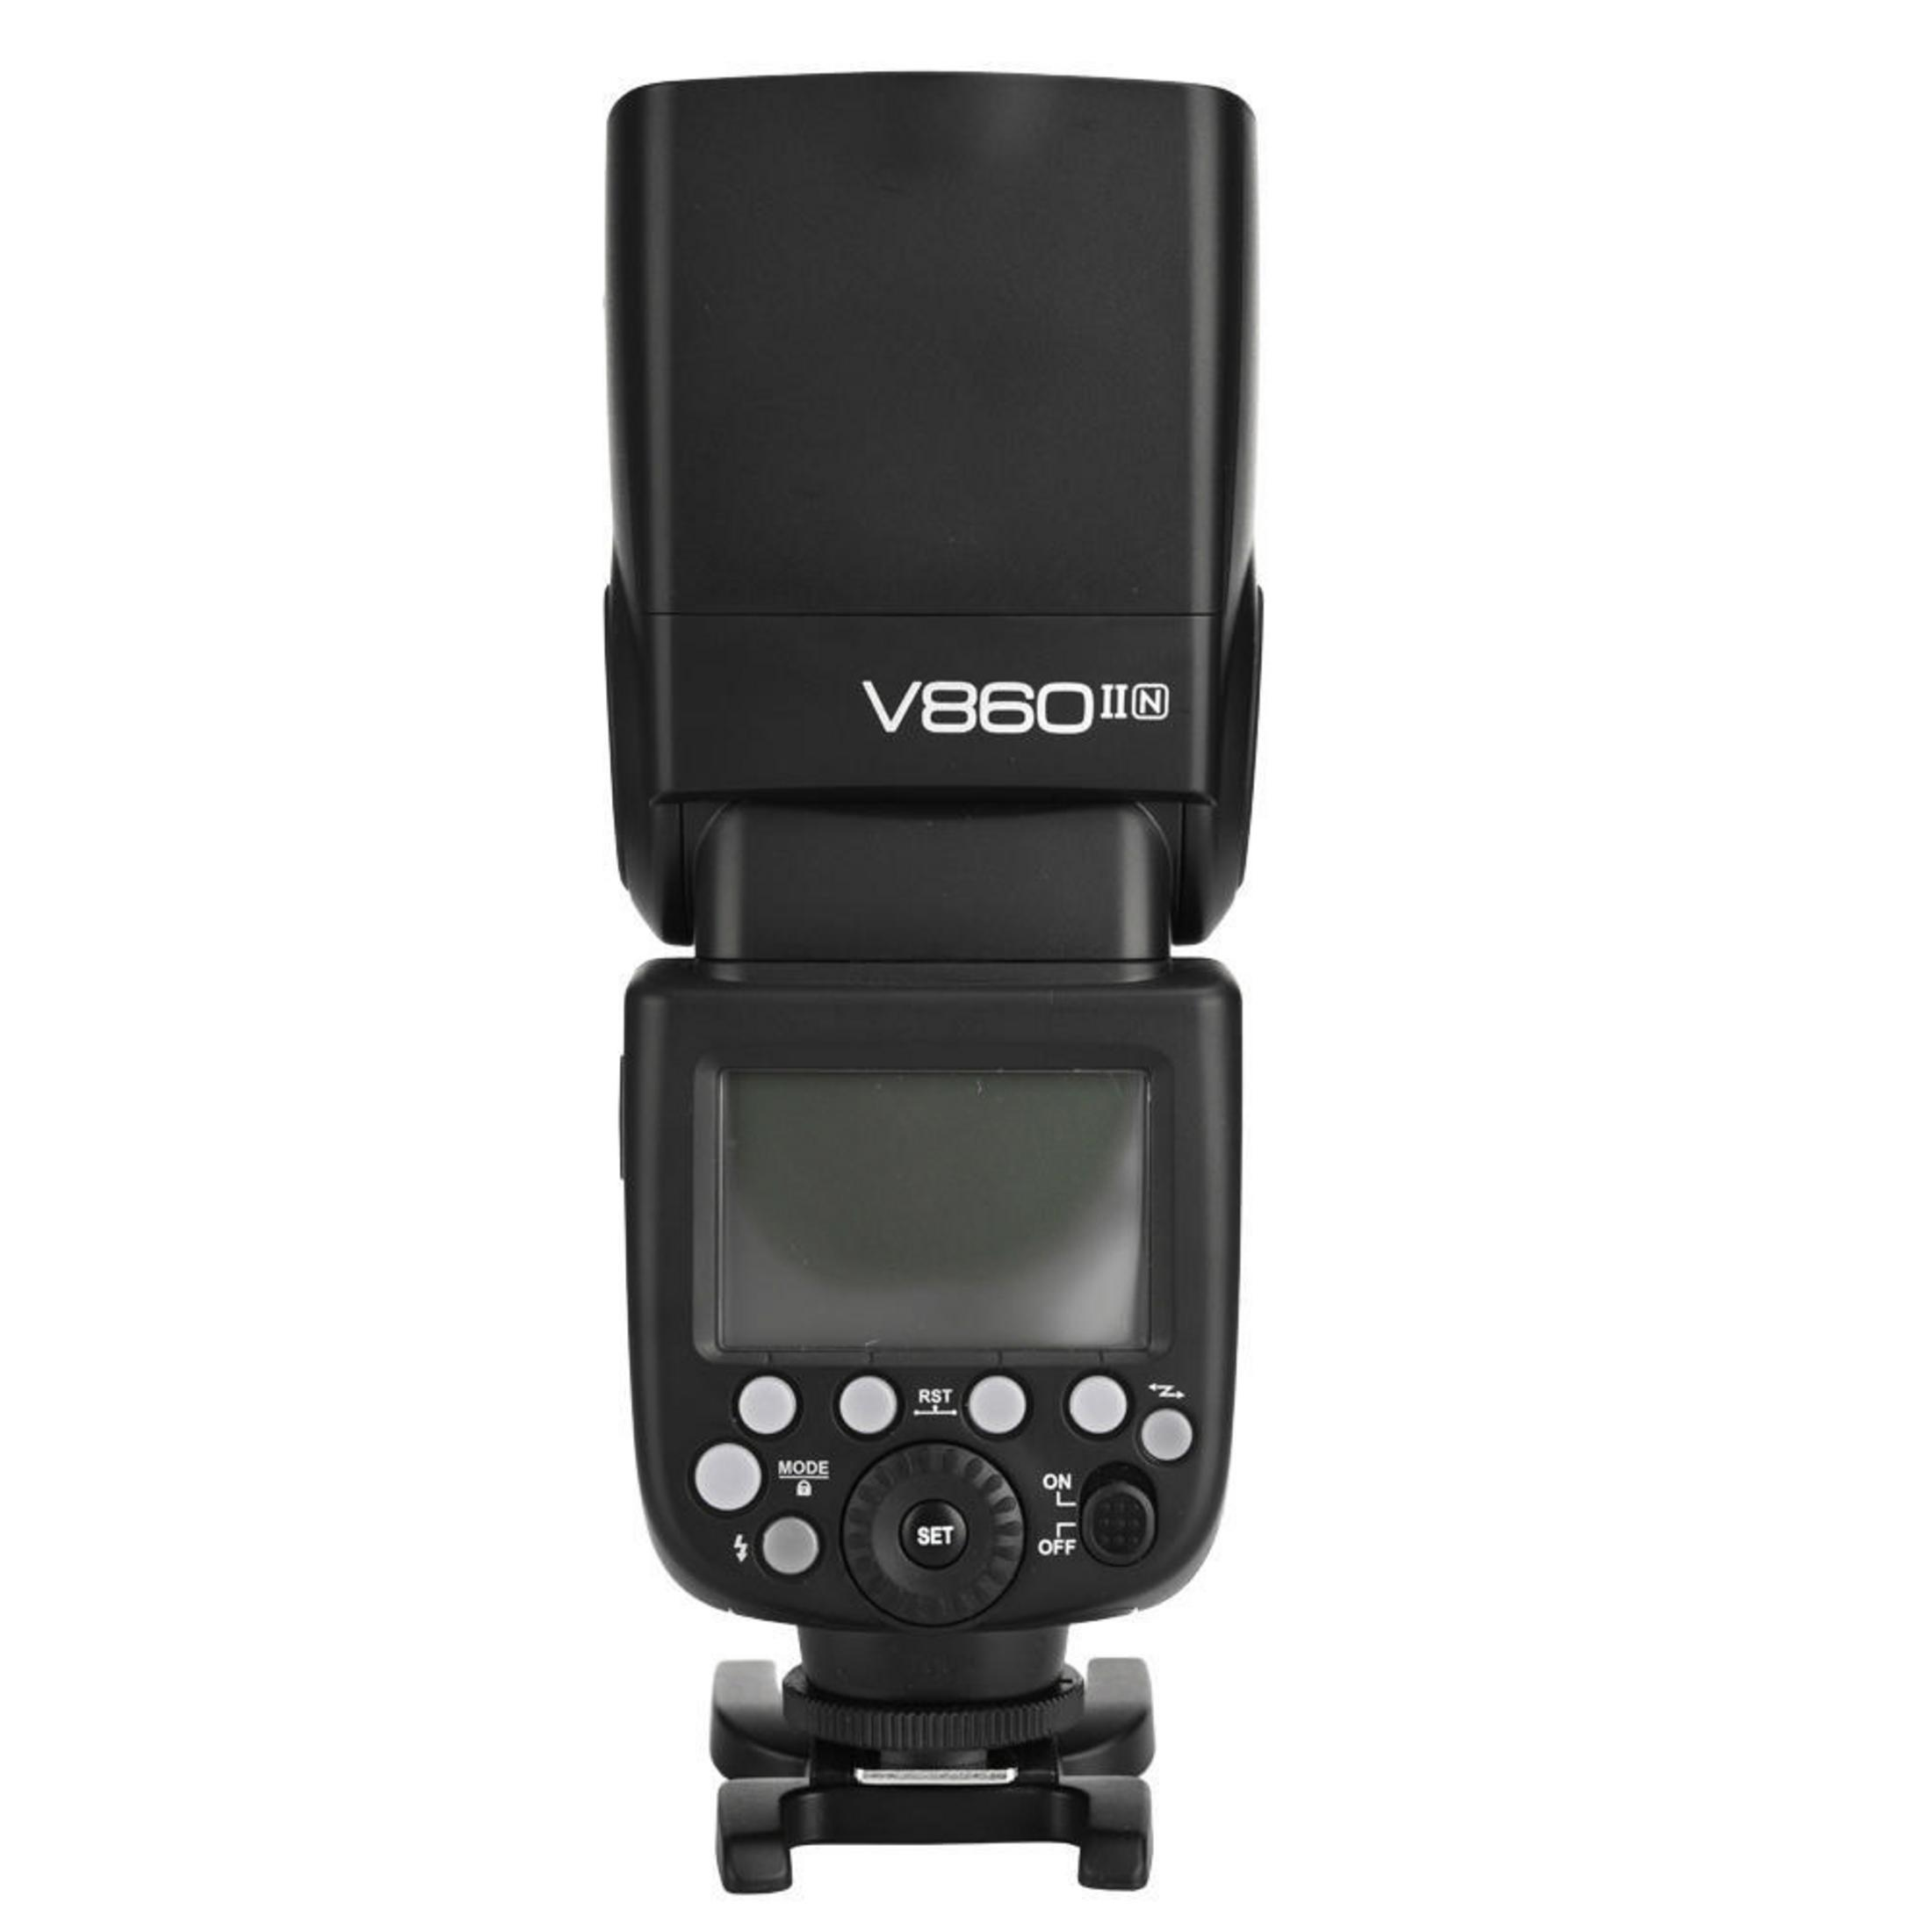 Ving GODOX Nikon Systemblitzgerät Camera Flash f. Kit i-TTL) (TTL) für (60, Nikon